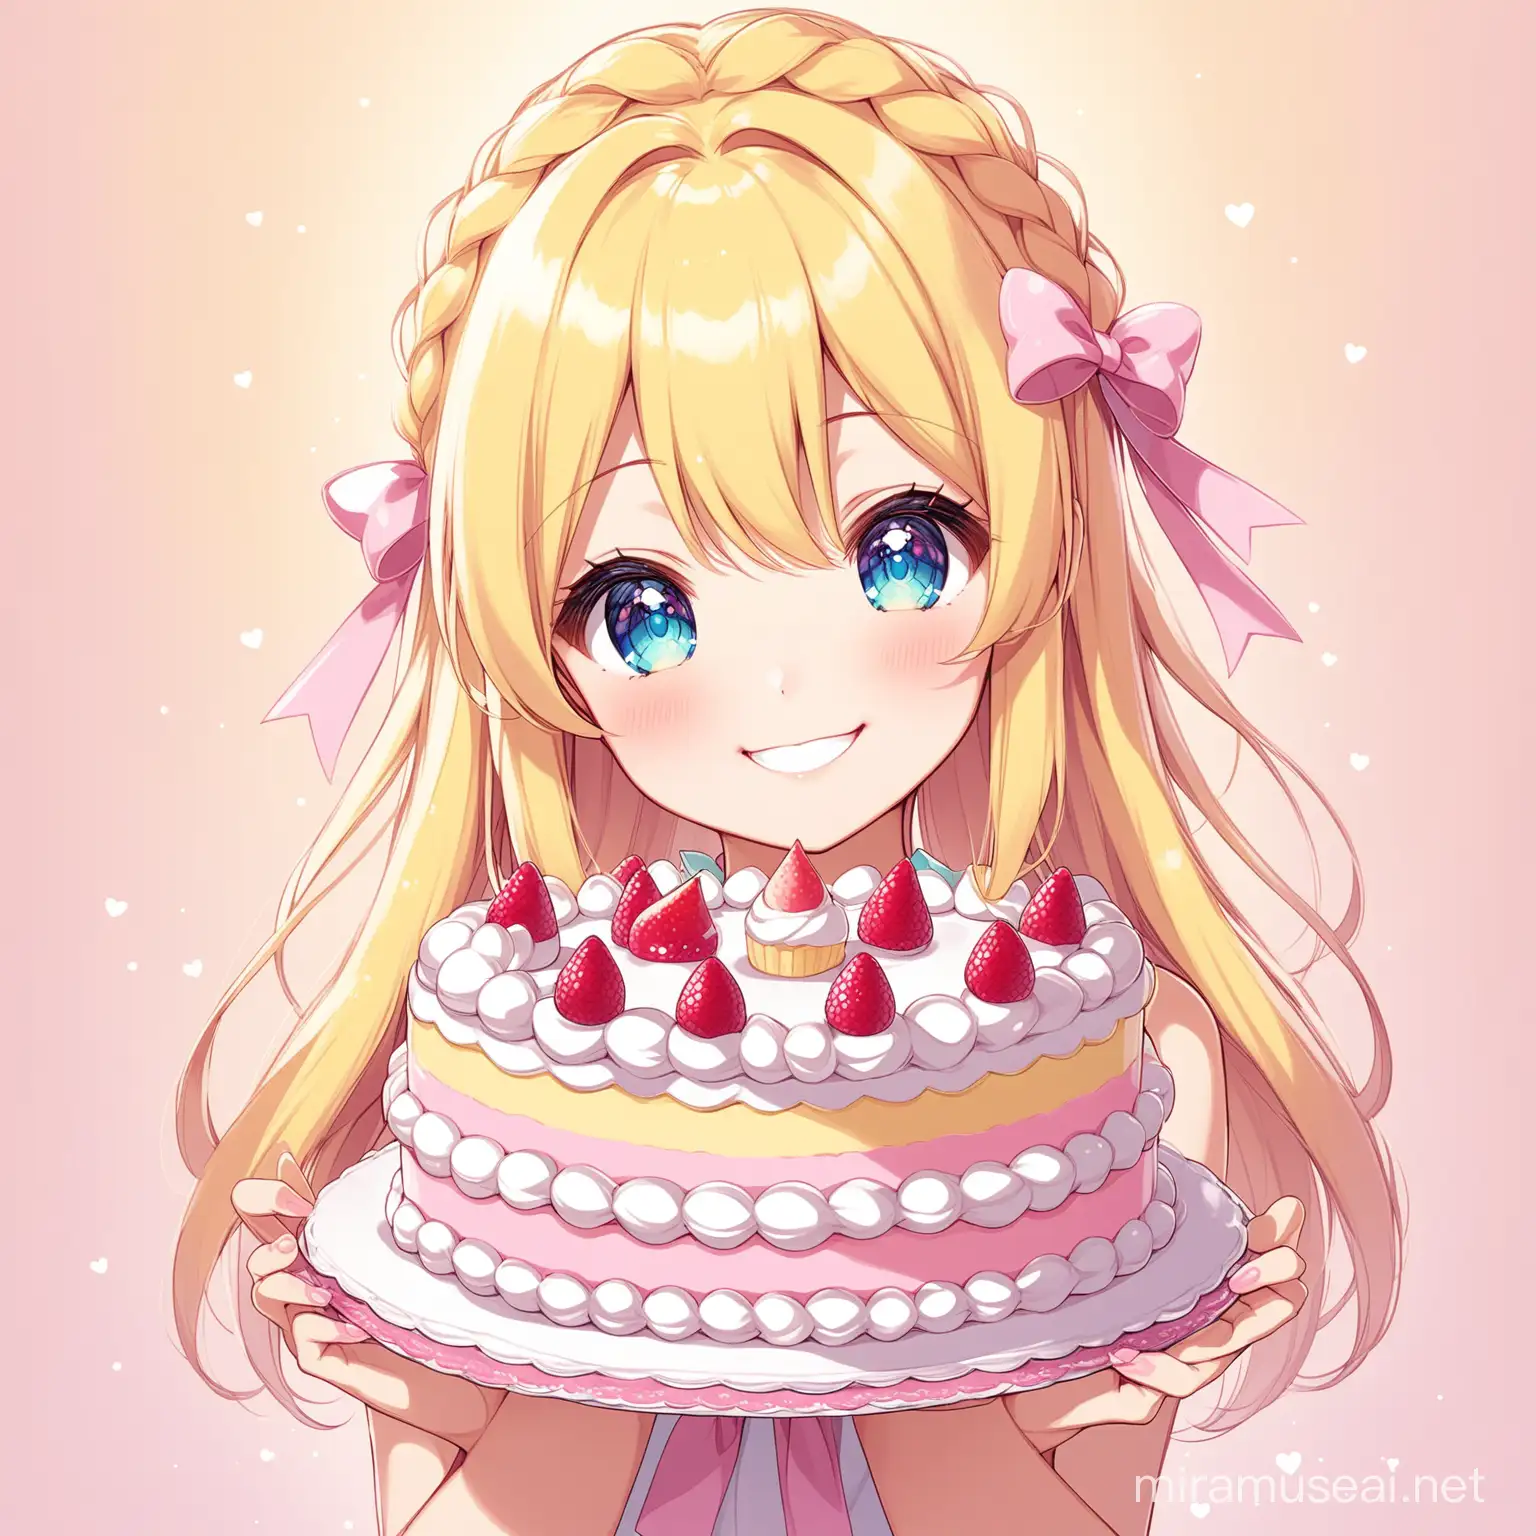 Anime Characters Enjoying PastelThemed Sweet Cake Party